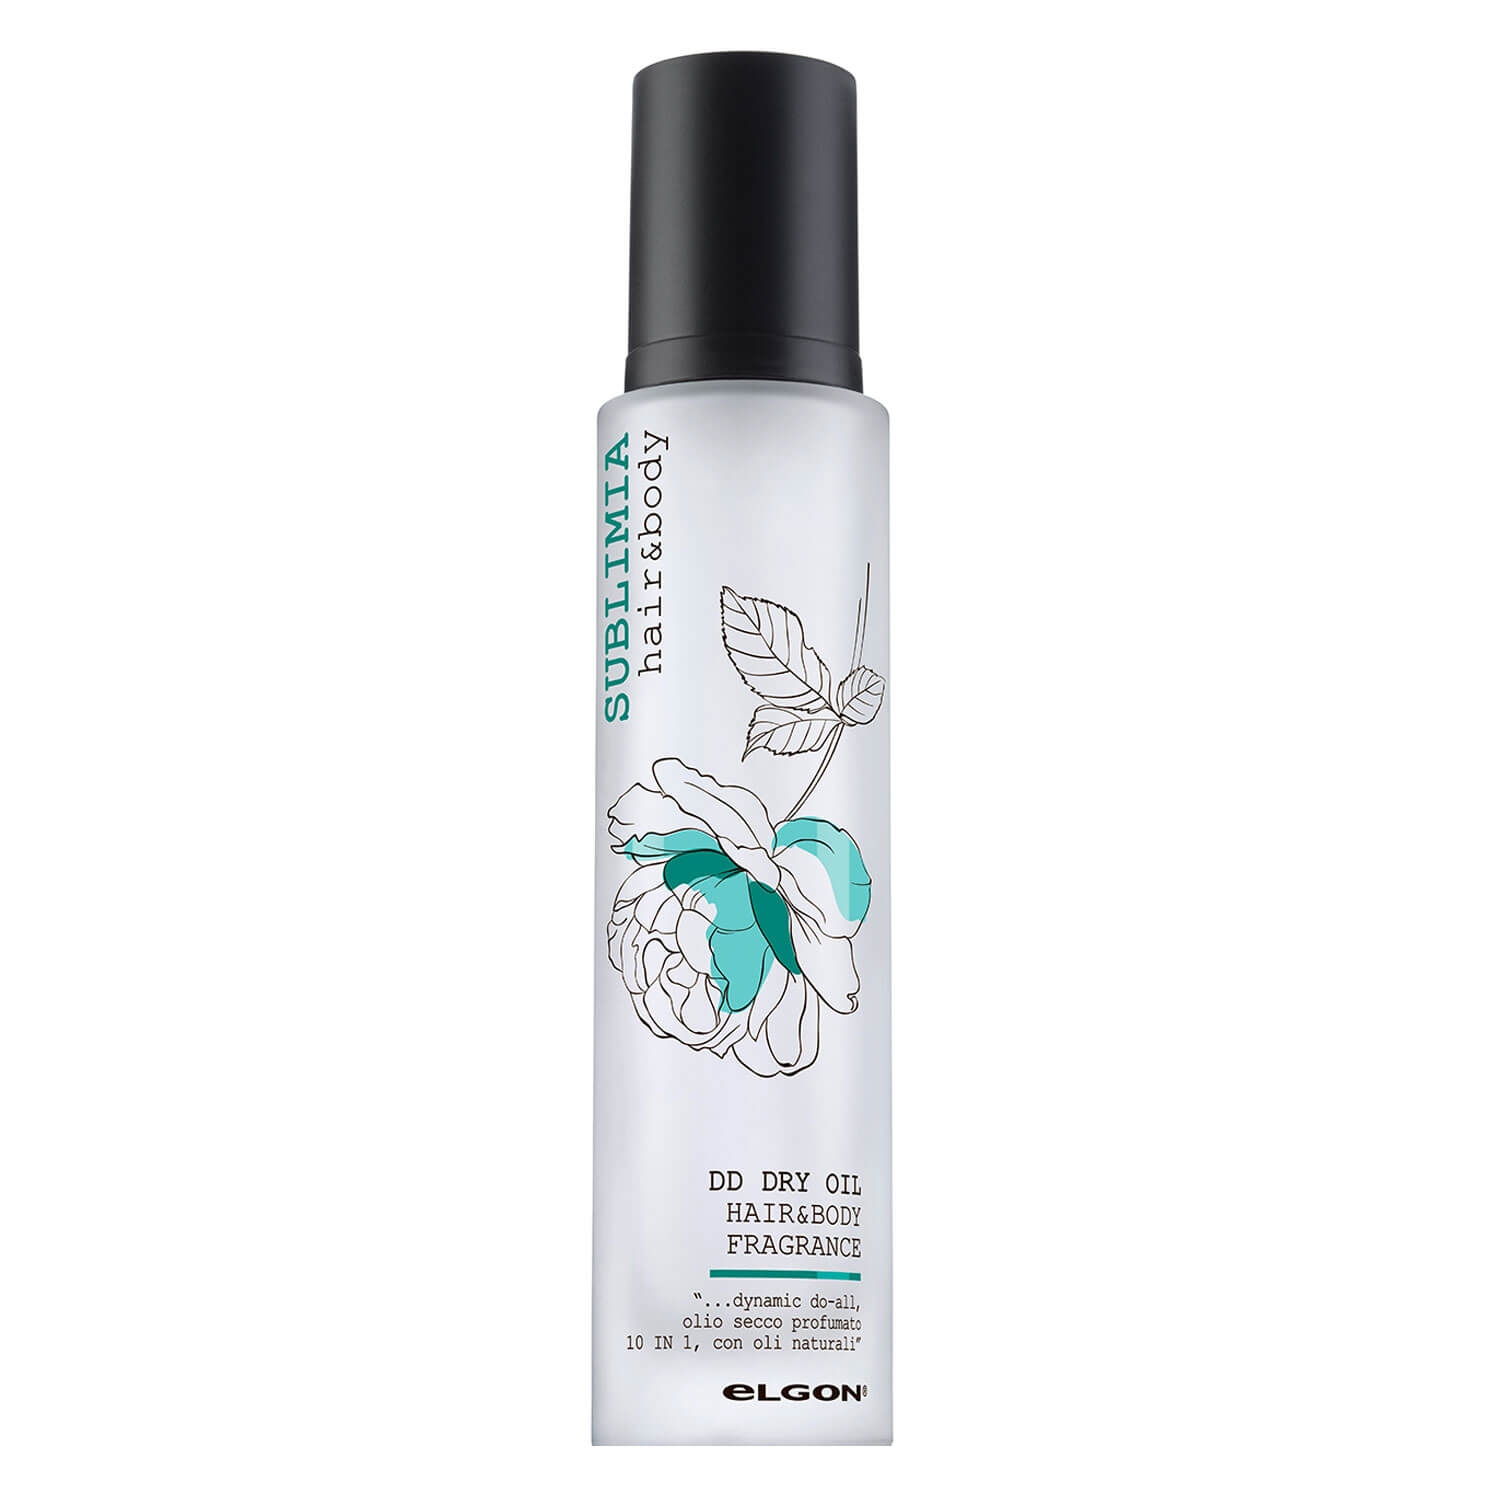 Produktbild von Sublimia - Hair & Body Fragrance Dry Oil